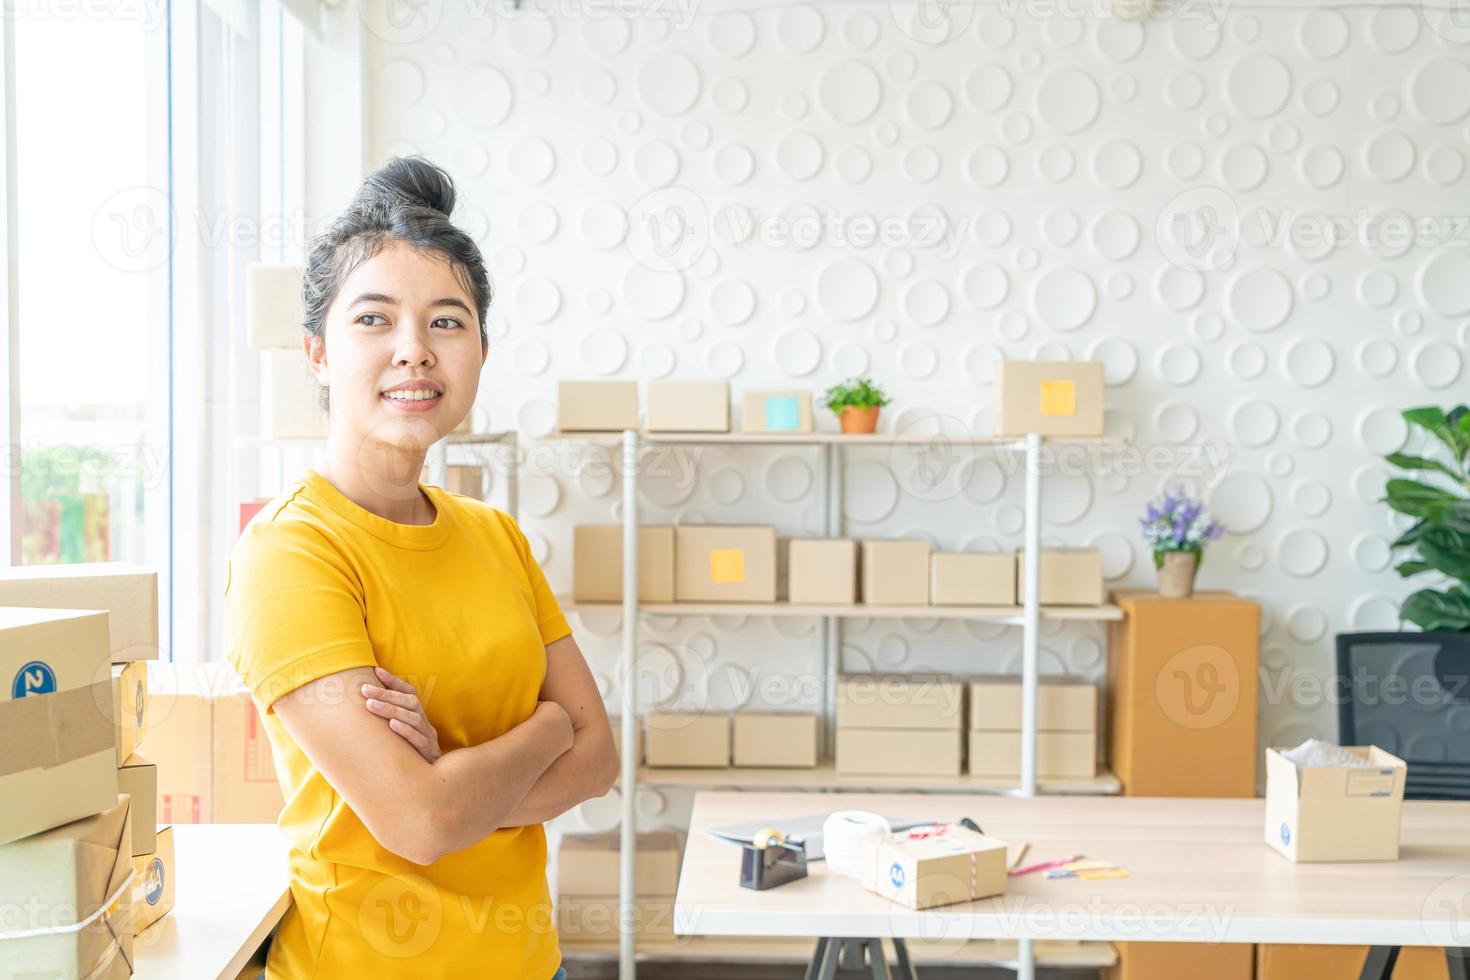 Aziatische vrouw bedrijfseigenaar die thuis werkt met verpakkingsdoos op de werkplek - online winkelen mkb-ondernemer of freelance werkconcept foto